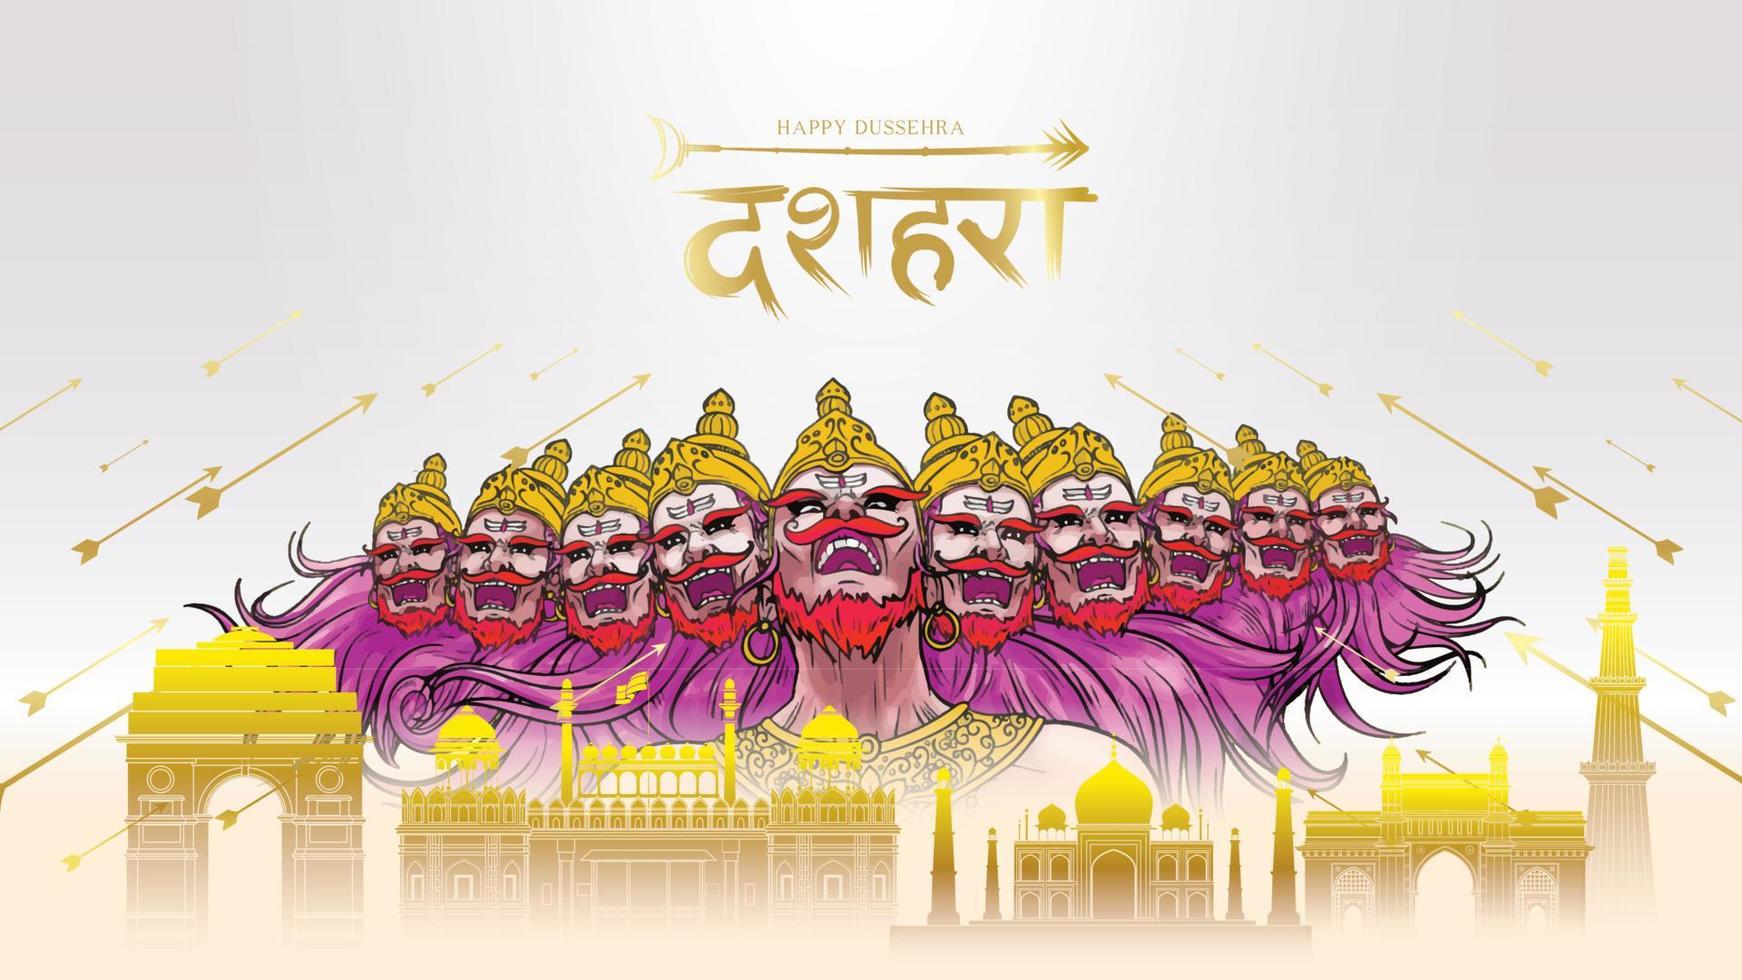 kreativ vektorillustration av lord rama som dödar ravana i glad dussehra navratri affischfestival i Indien. översättning dussehra vektor